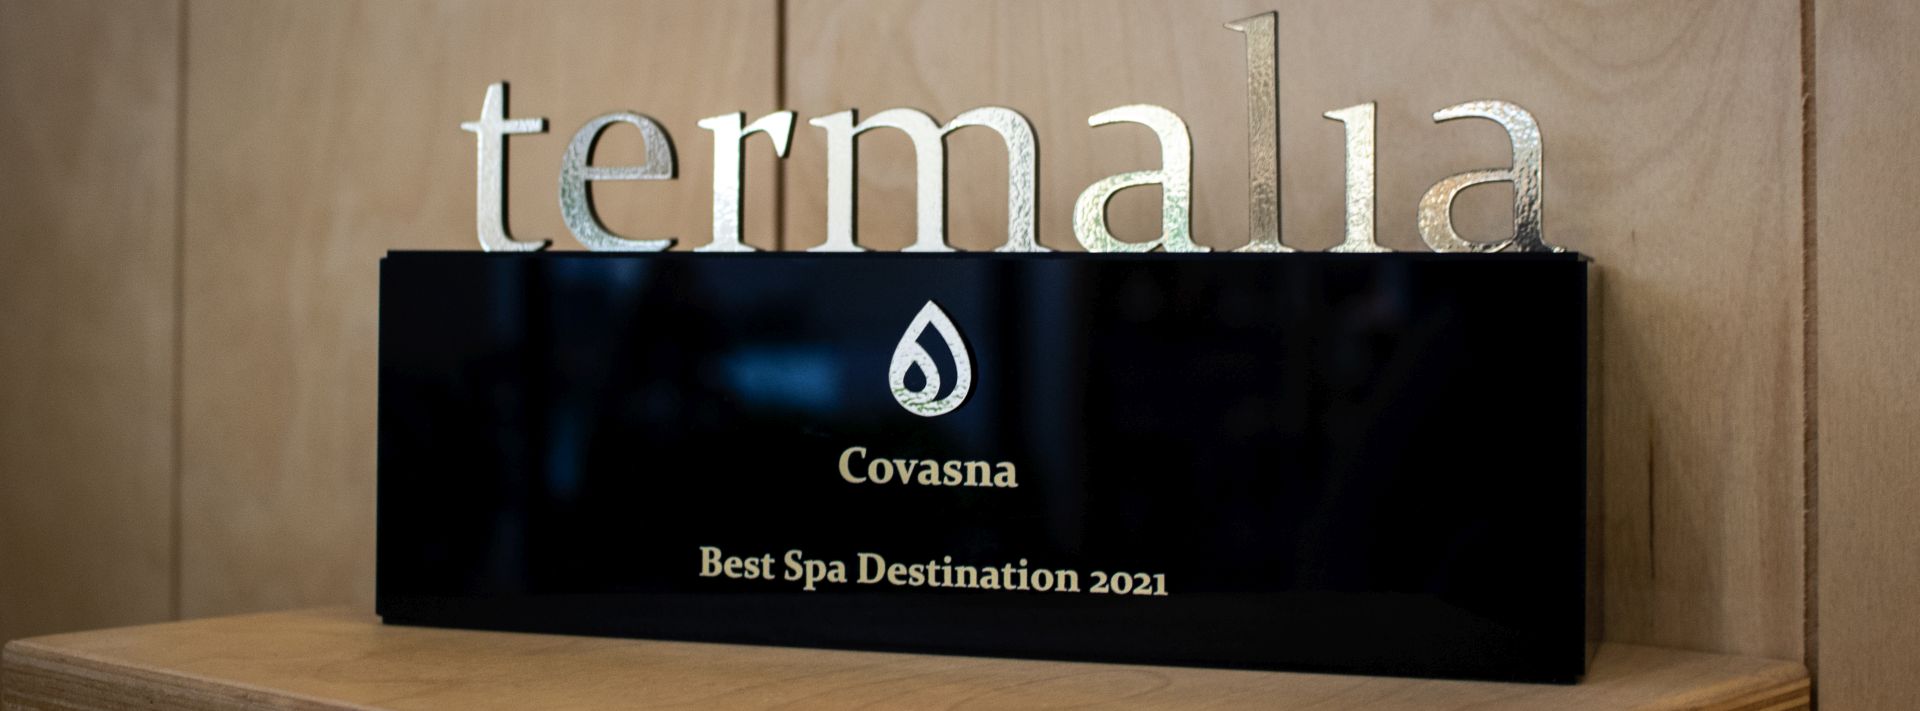 Județul Covasna, câștigător al categoriei Best Spa Destination în România